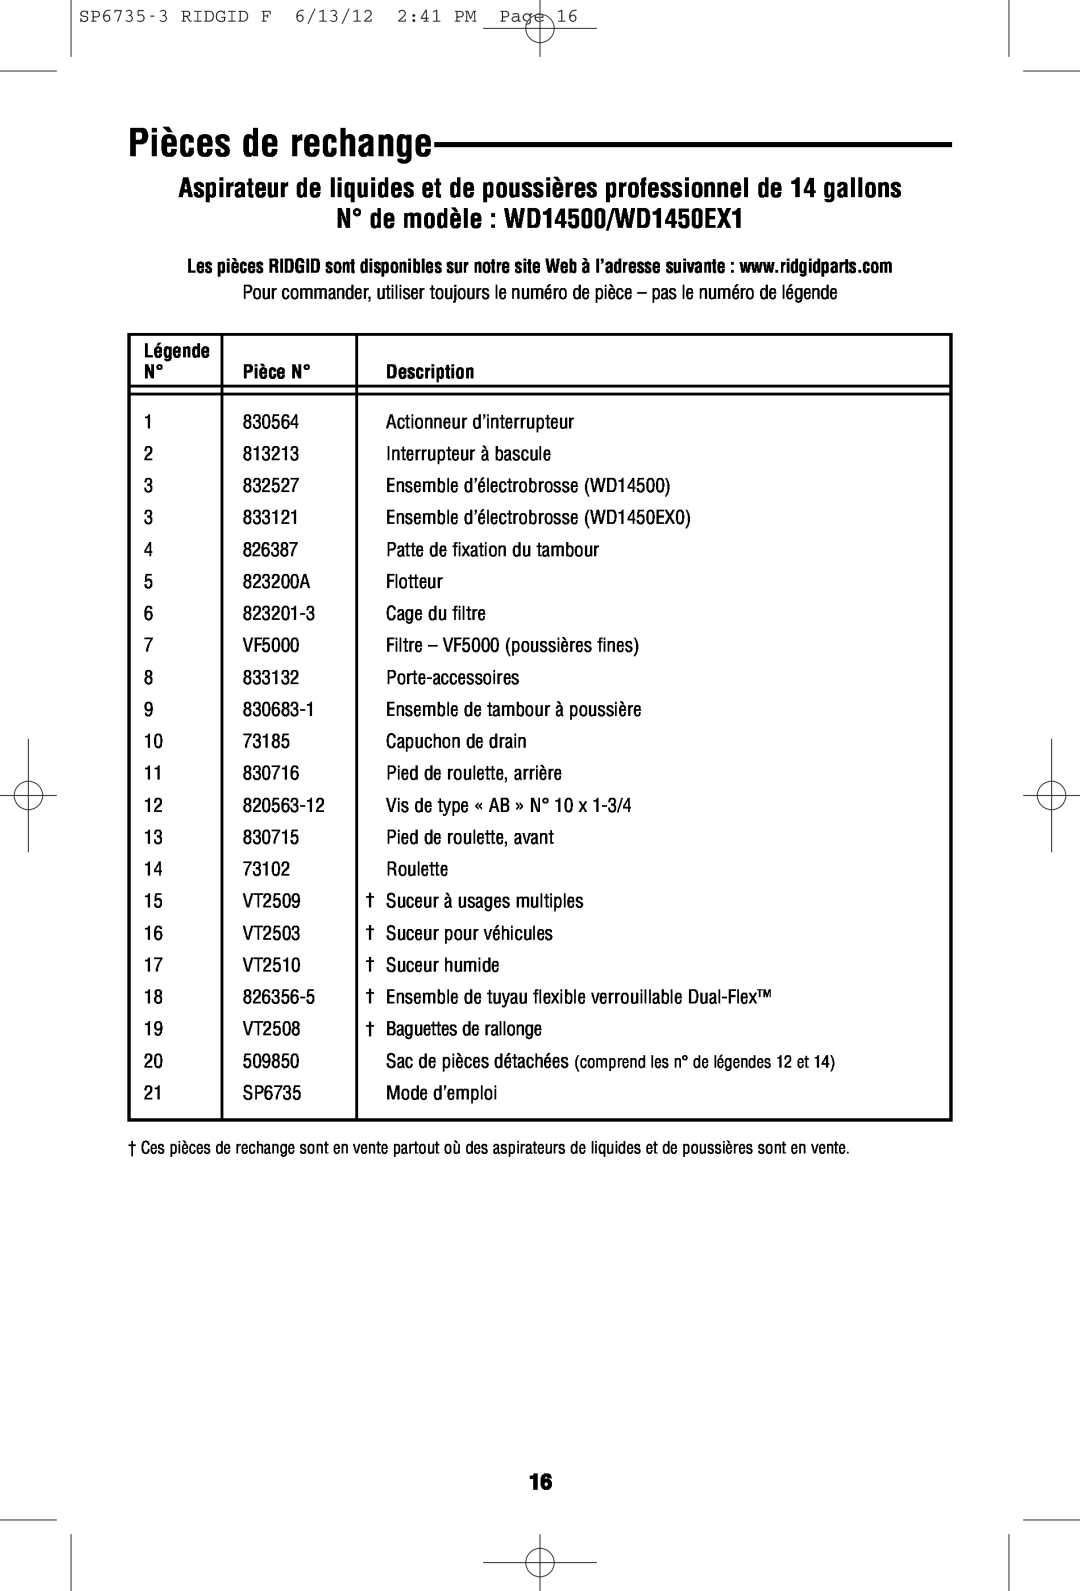 RIDGID owner manual Pièces de rechange, N de modèle WD14500/WD1450EX1, Pièce N, Description 